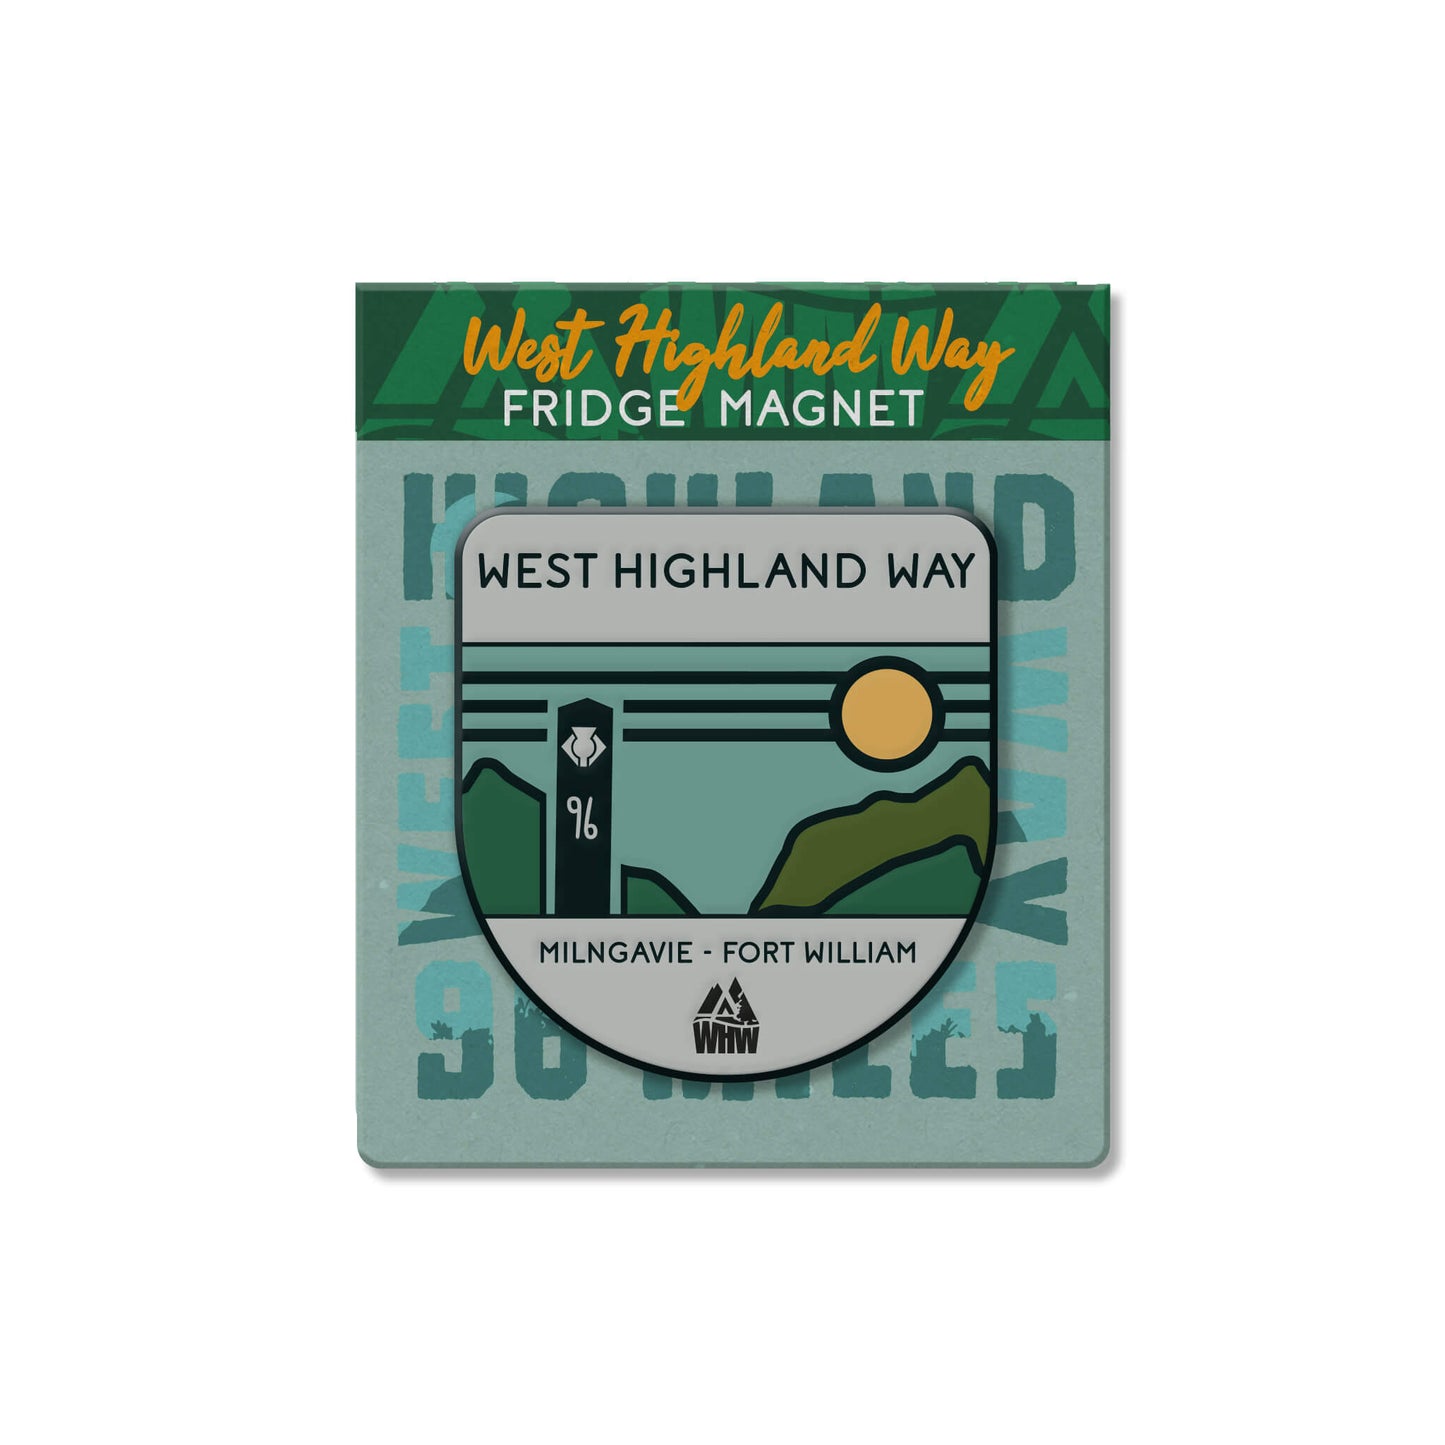 West Highland Way Fridge Magnet